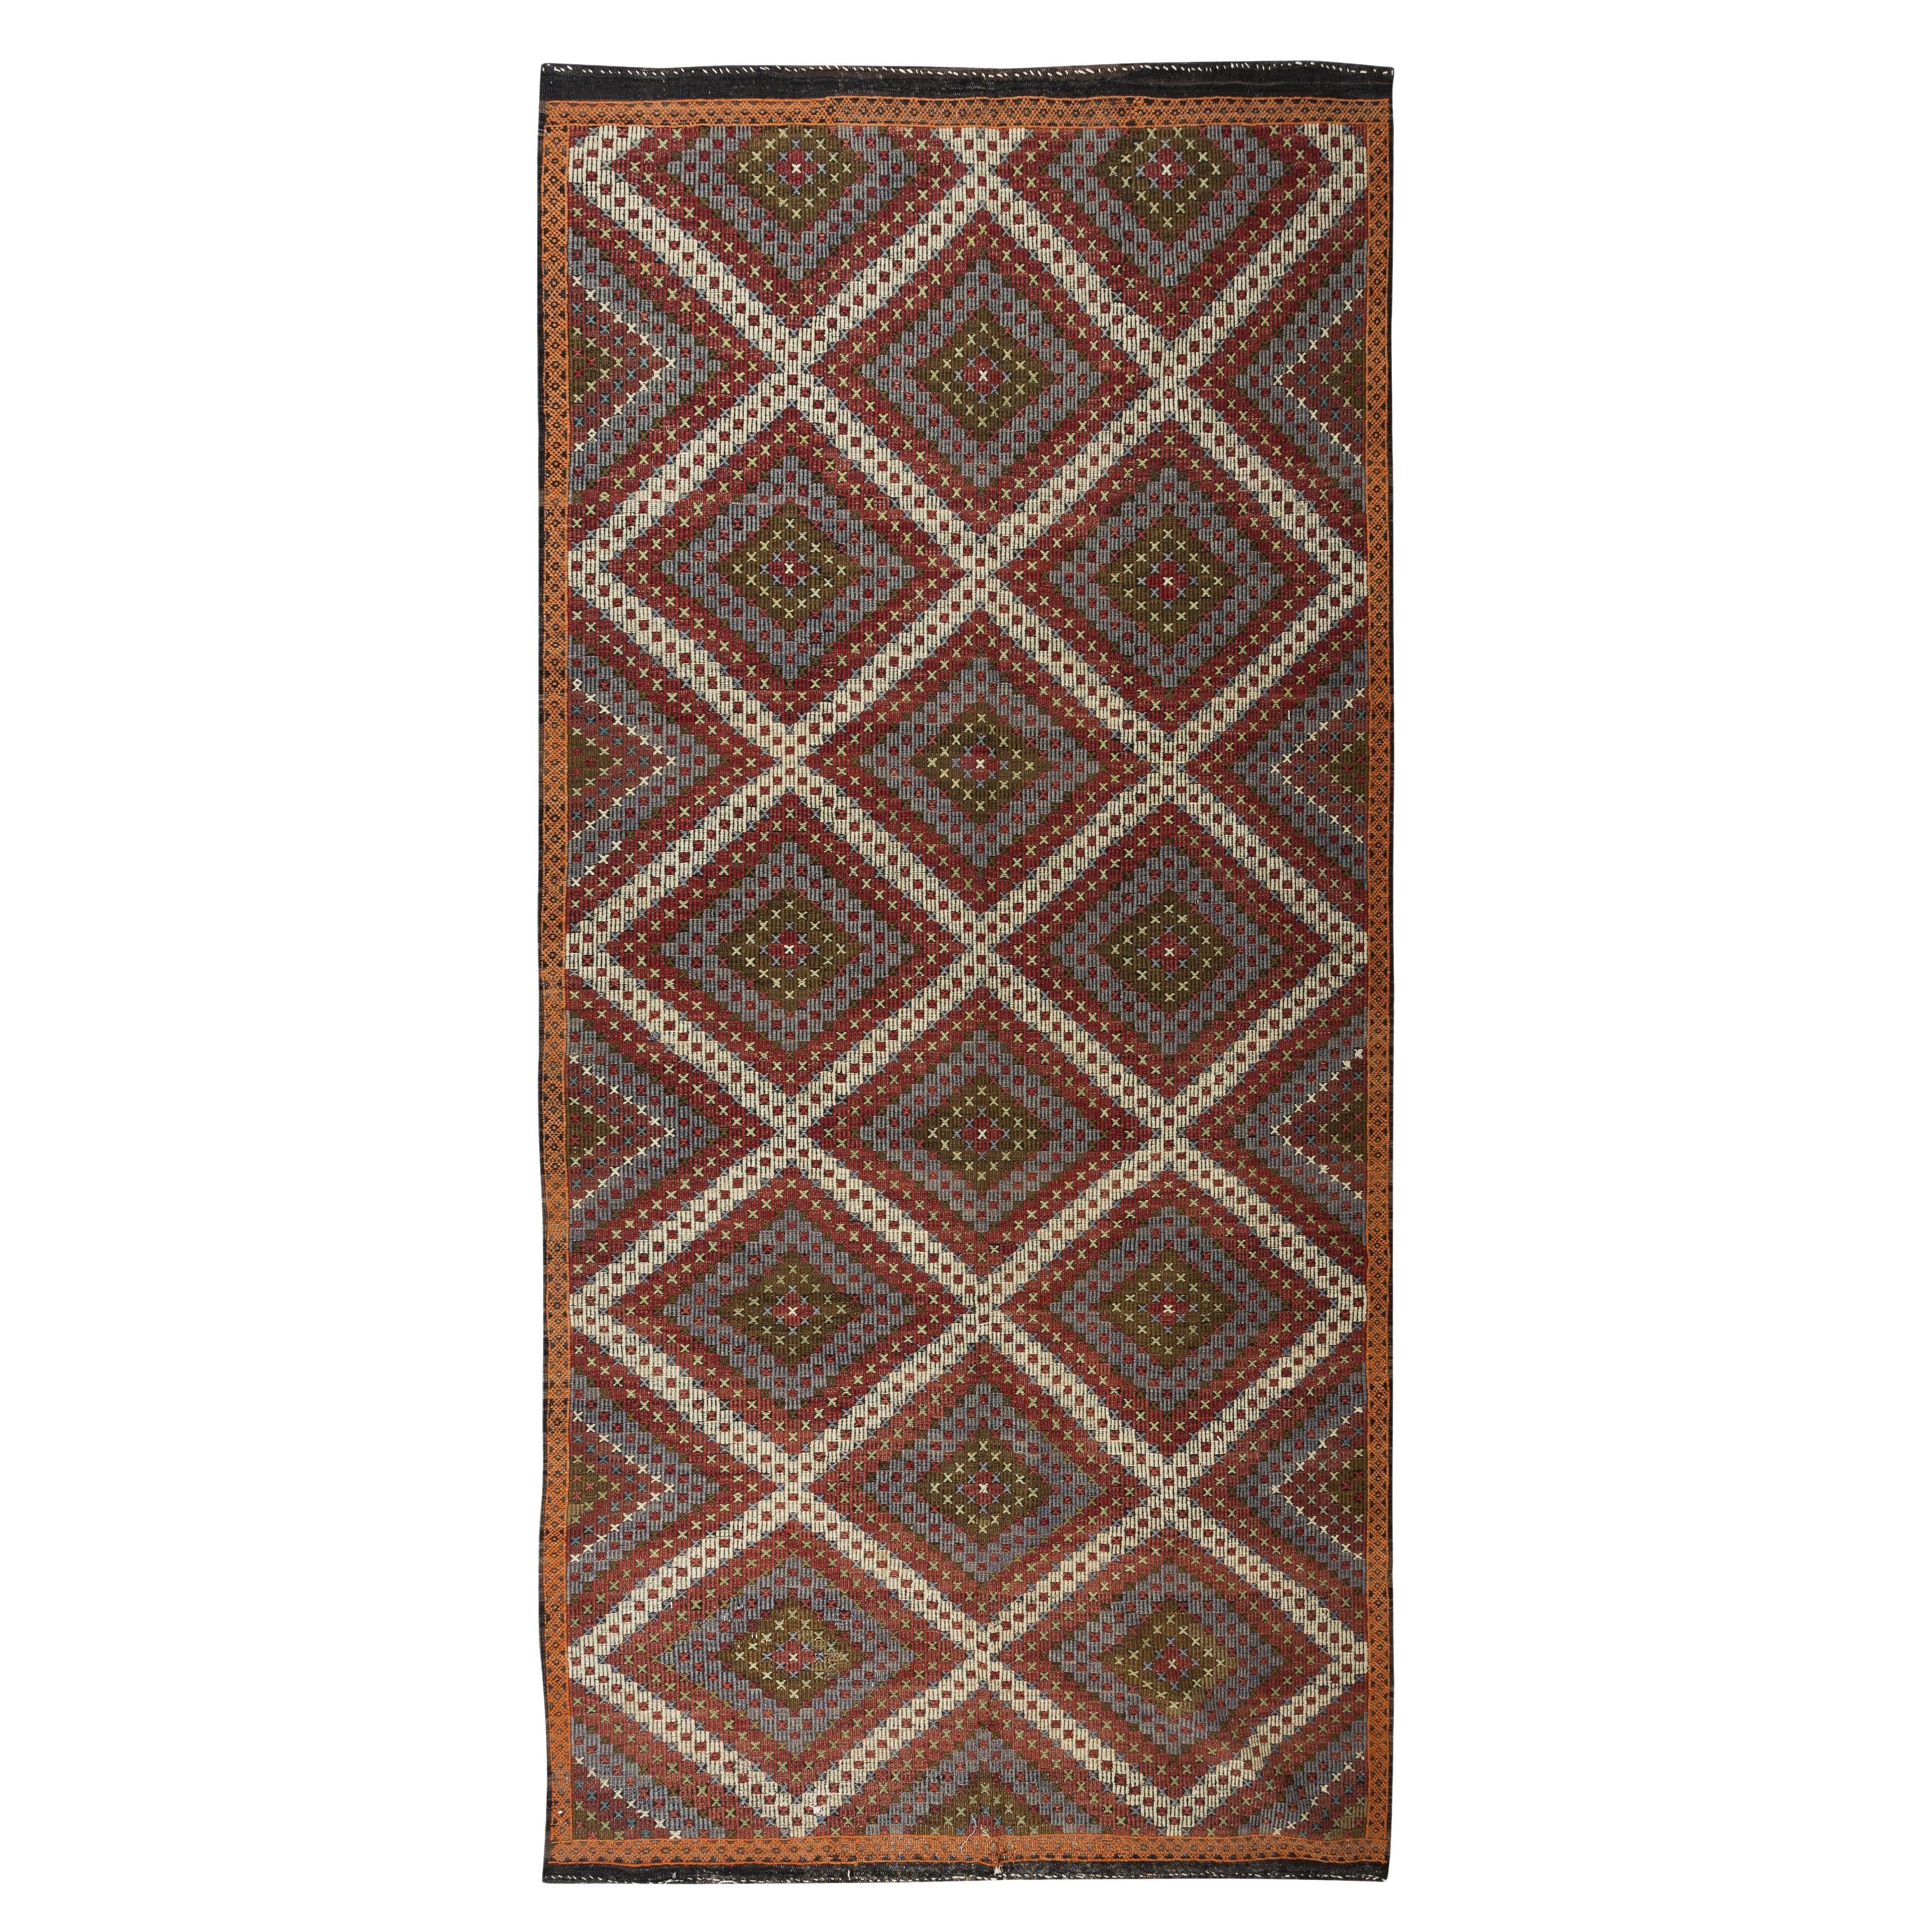 6x12.3 Ft Vintage türkische Wolle Jajim Kilim, ein von einer Art handgewebten böhmischen Teppich